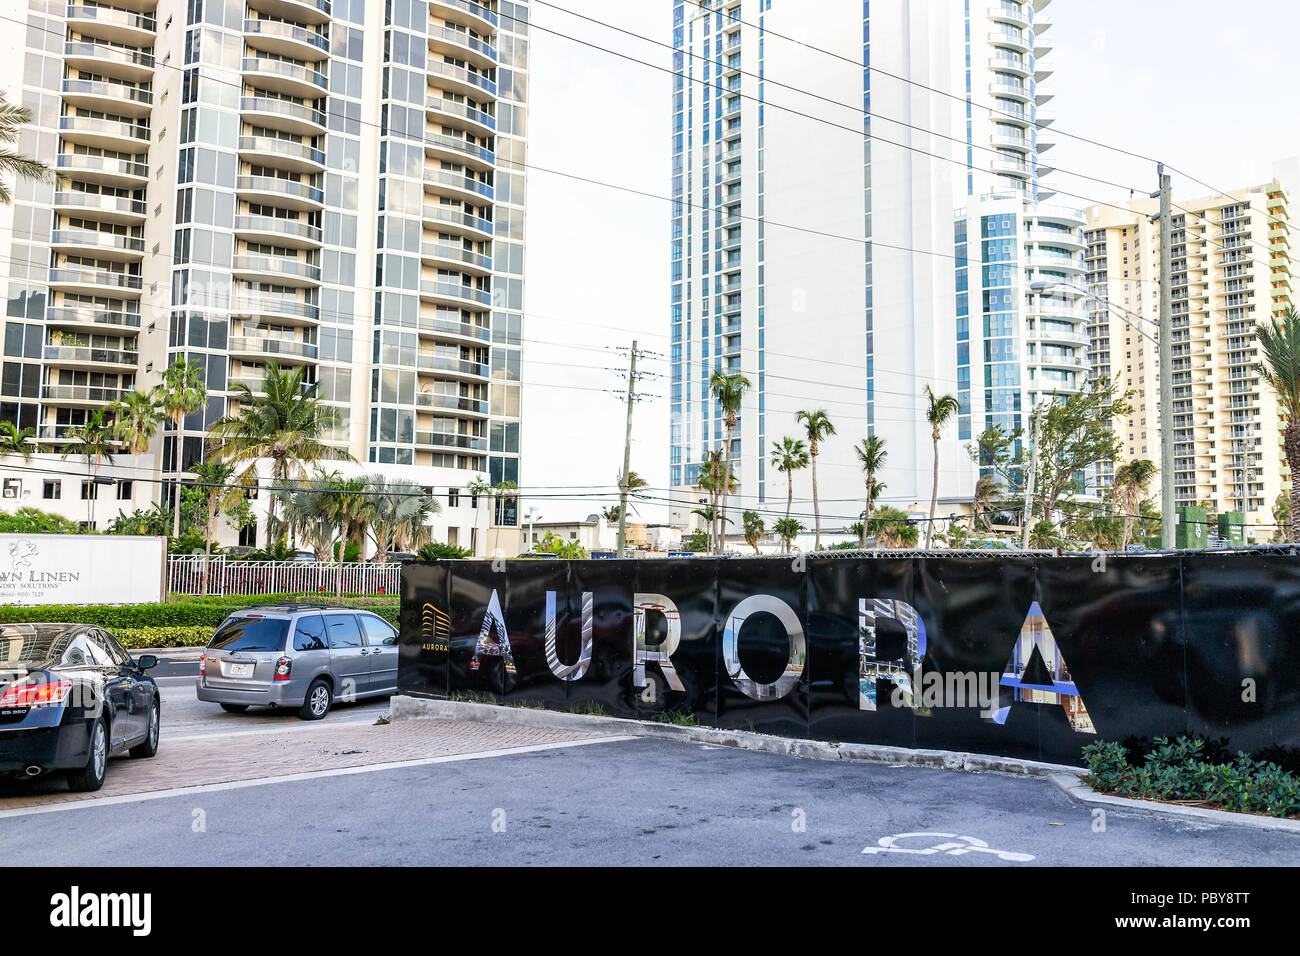 Sunny Isles Beach, Stati Uniti d'America - 4 Maggio 2018: Appartamento condo Hotel Aurora costruzione dell'edificio durante la giornata di sole a Miami in Florida con grattacieli urban bac Foto Stock